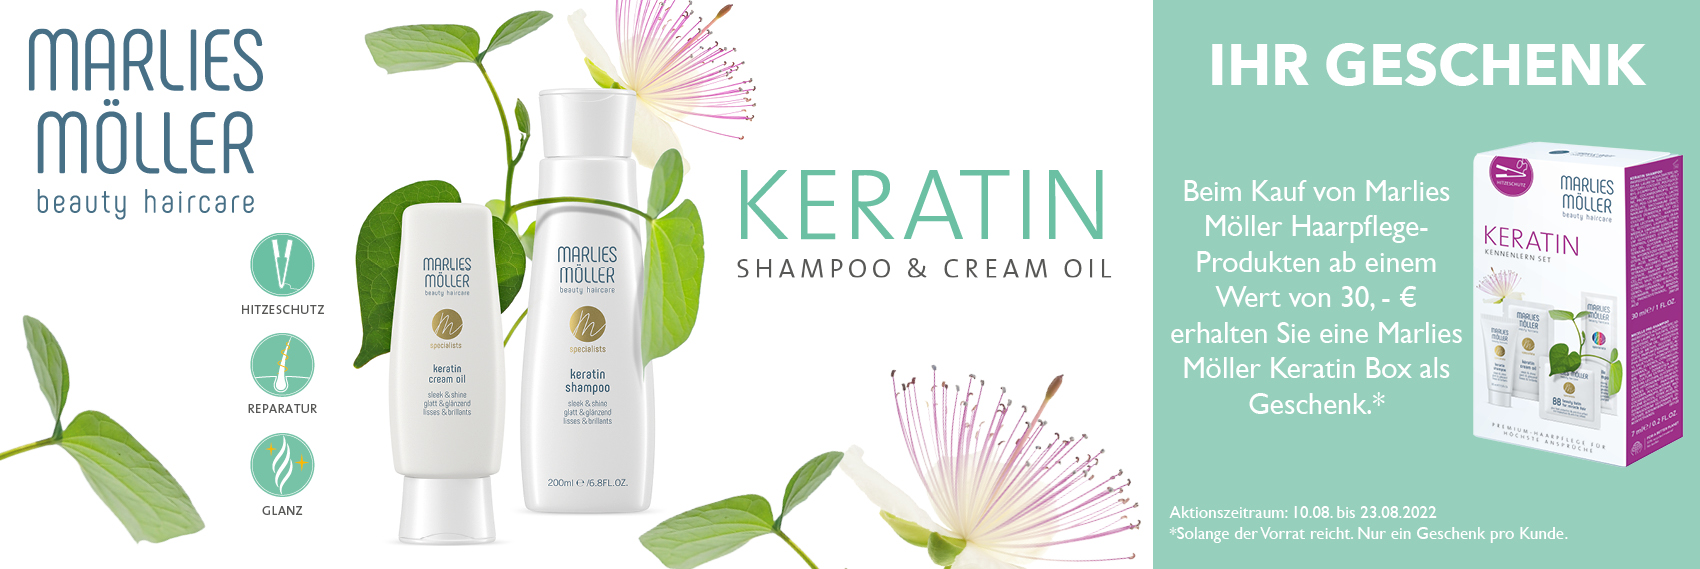 Marlies Möller Keratin Shampoo & Cream Oil - Premium Haarpflege für höchste Ansprüche!